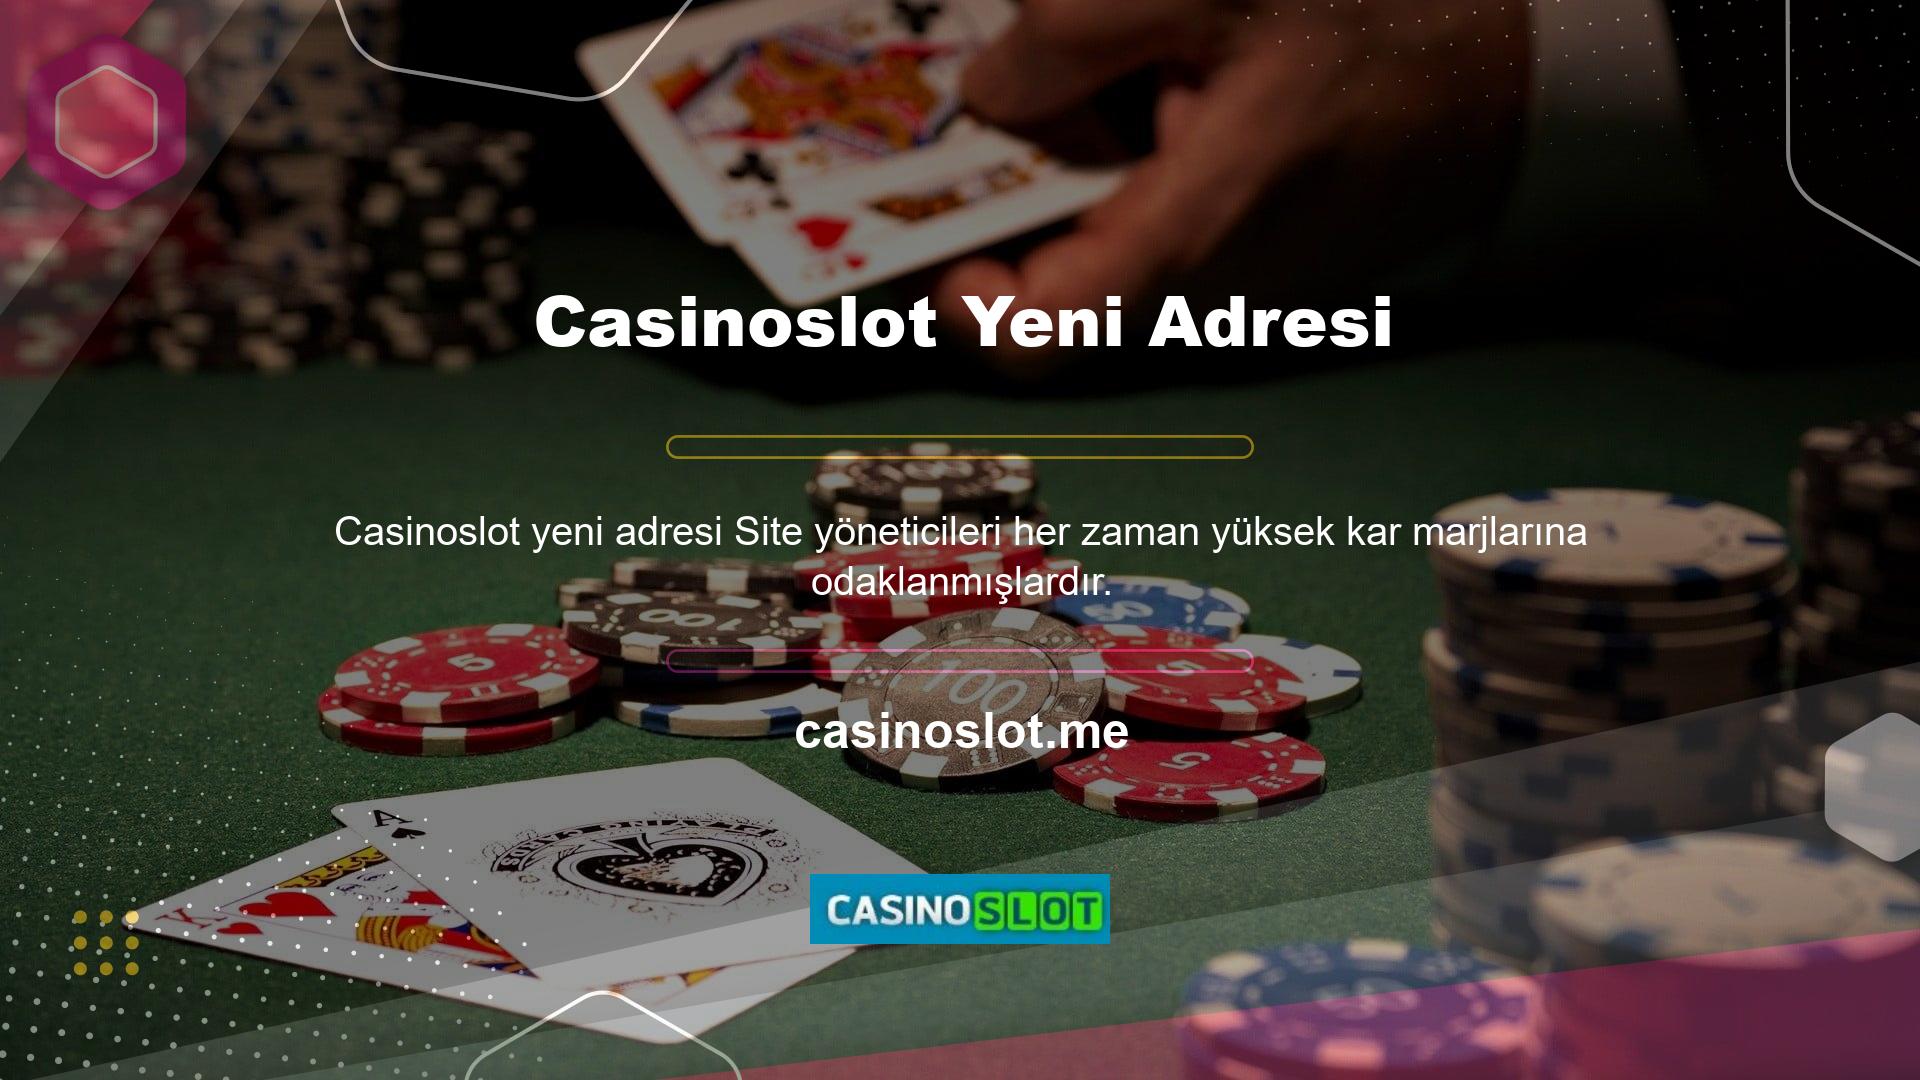 Casinoslot, eski giriş adresiyle aynı olan yeni bir giriş adresi kullanarak kullanıcılara uygun maliyetli bir yöntem sunar